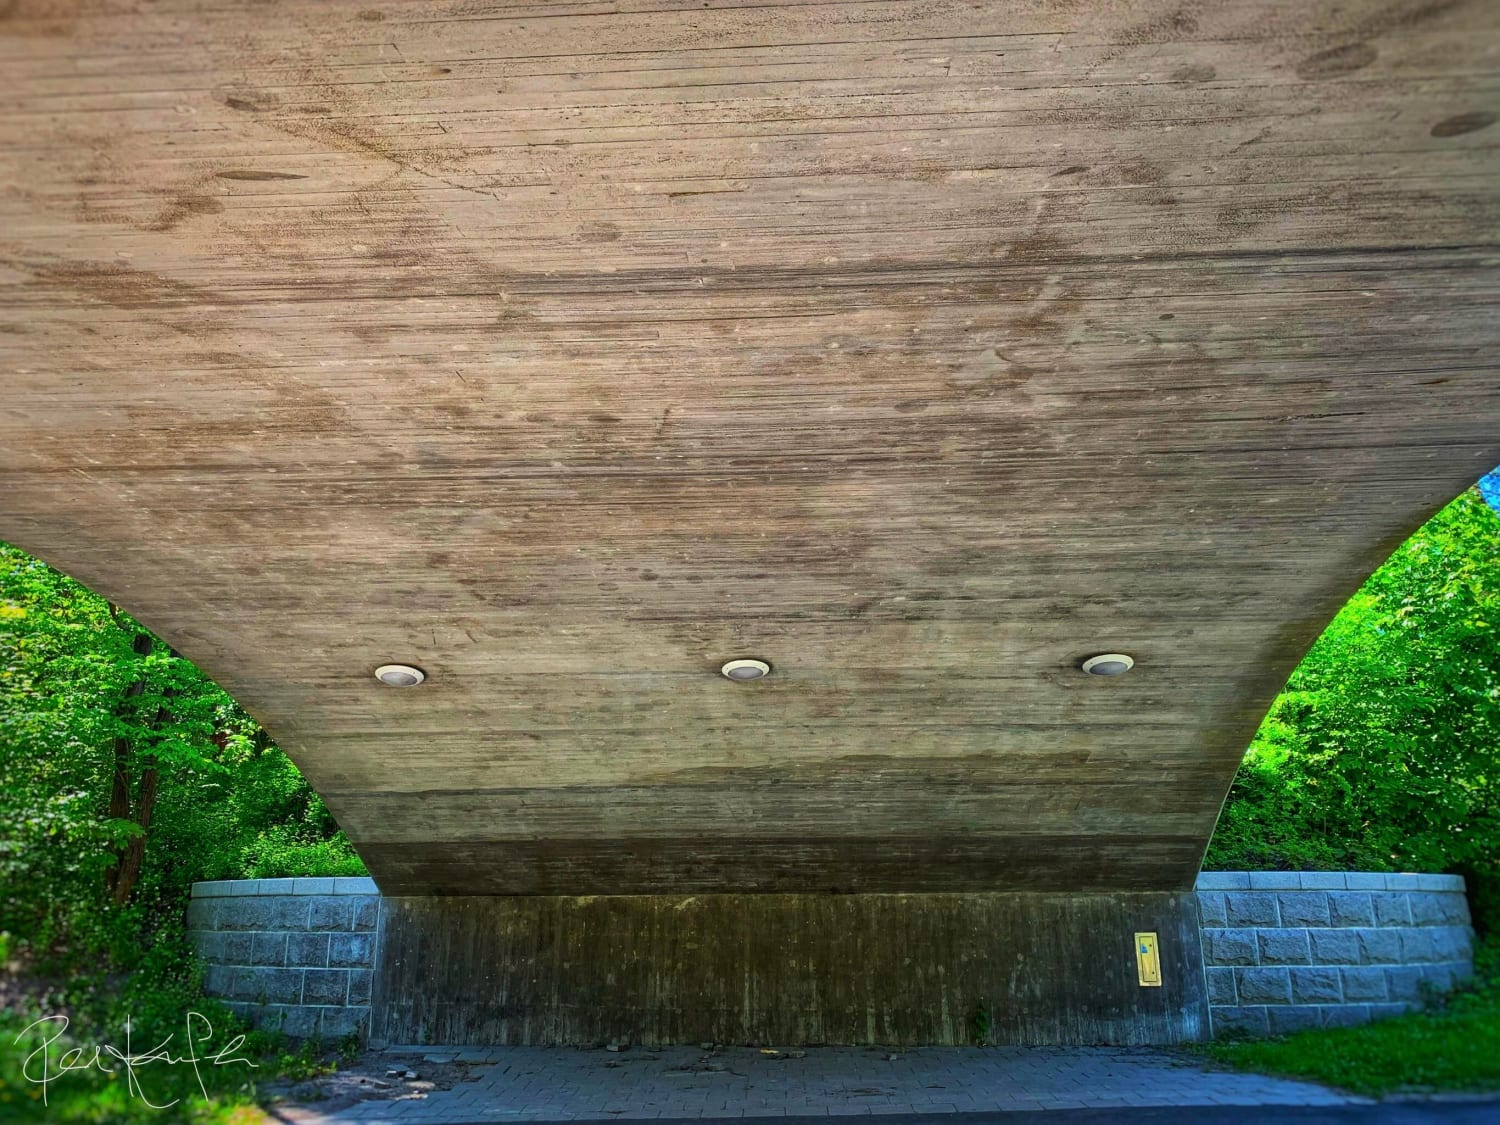 Concrete structure, no graffiti, no trash.. (Bromma, Sweden)